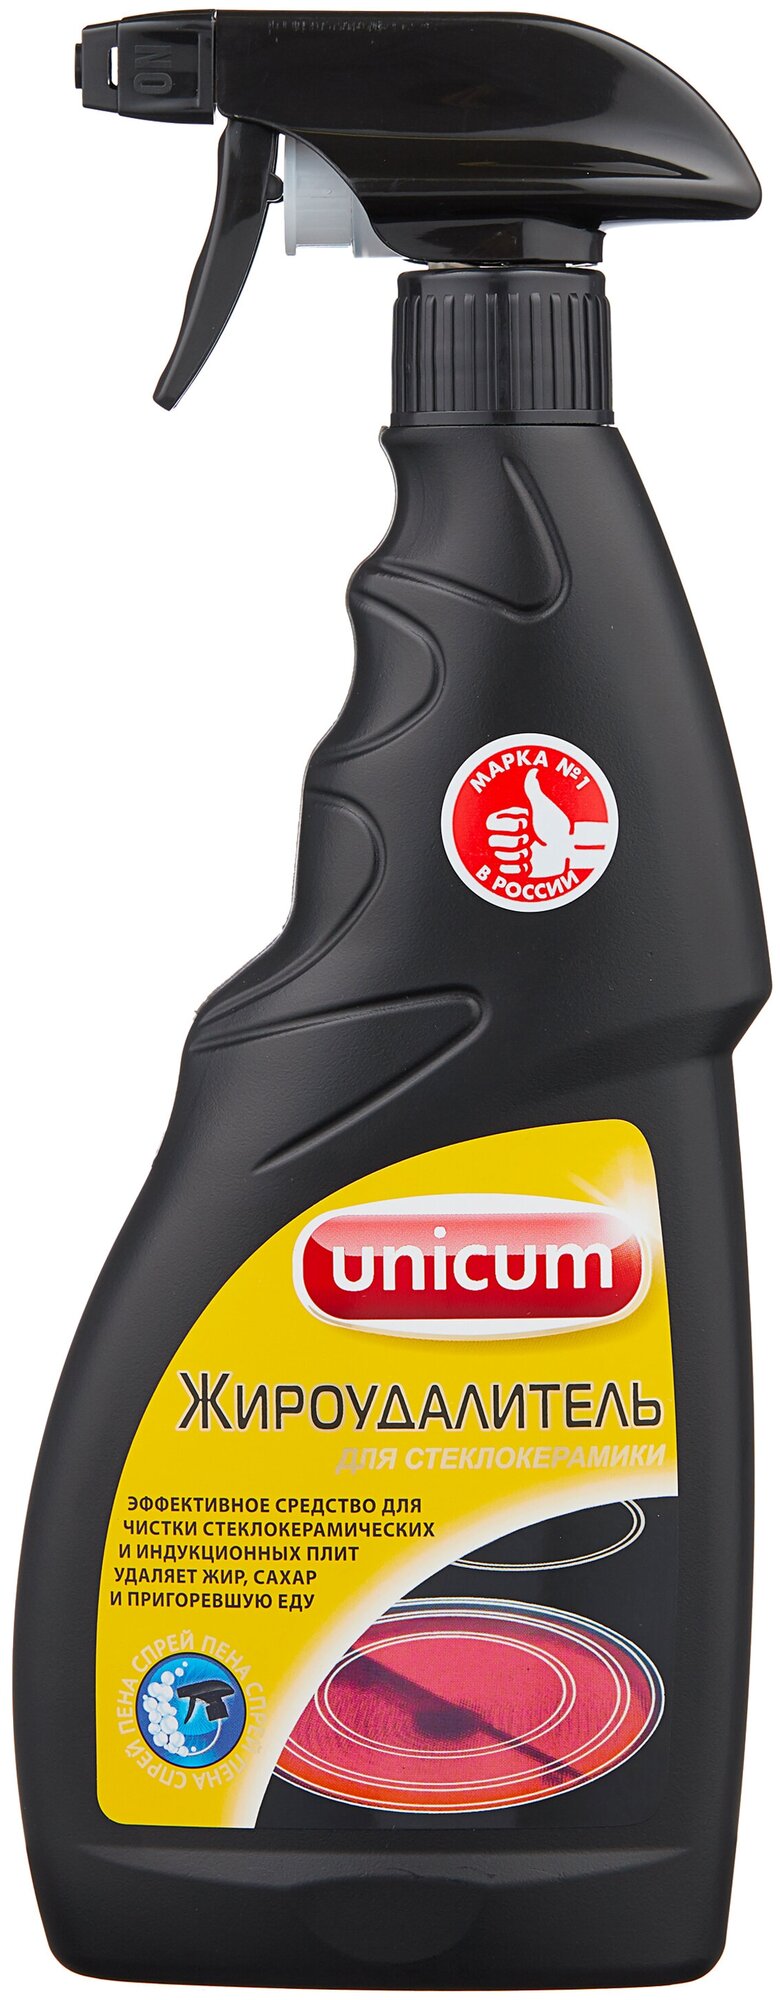 Чистящий спрей Unicum Жироудалитель для стеклокерамики, 500 мл